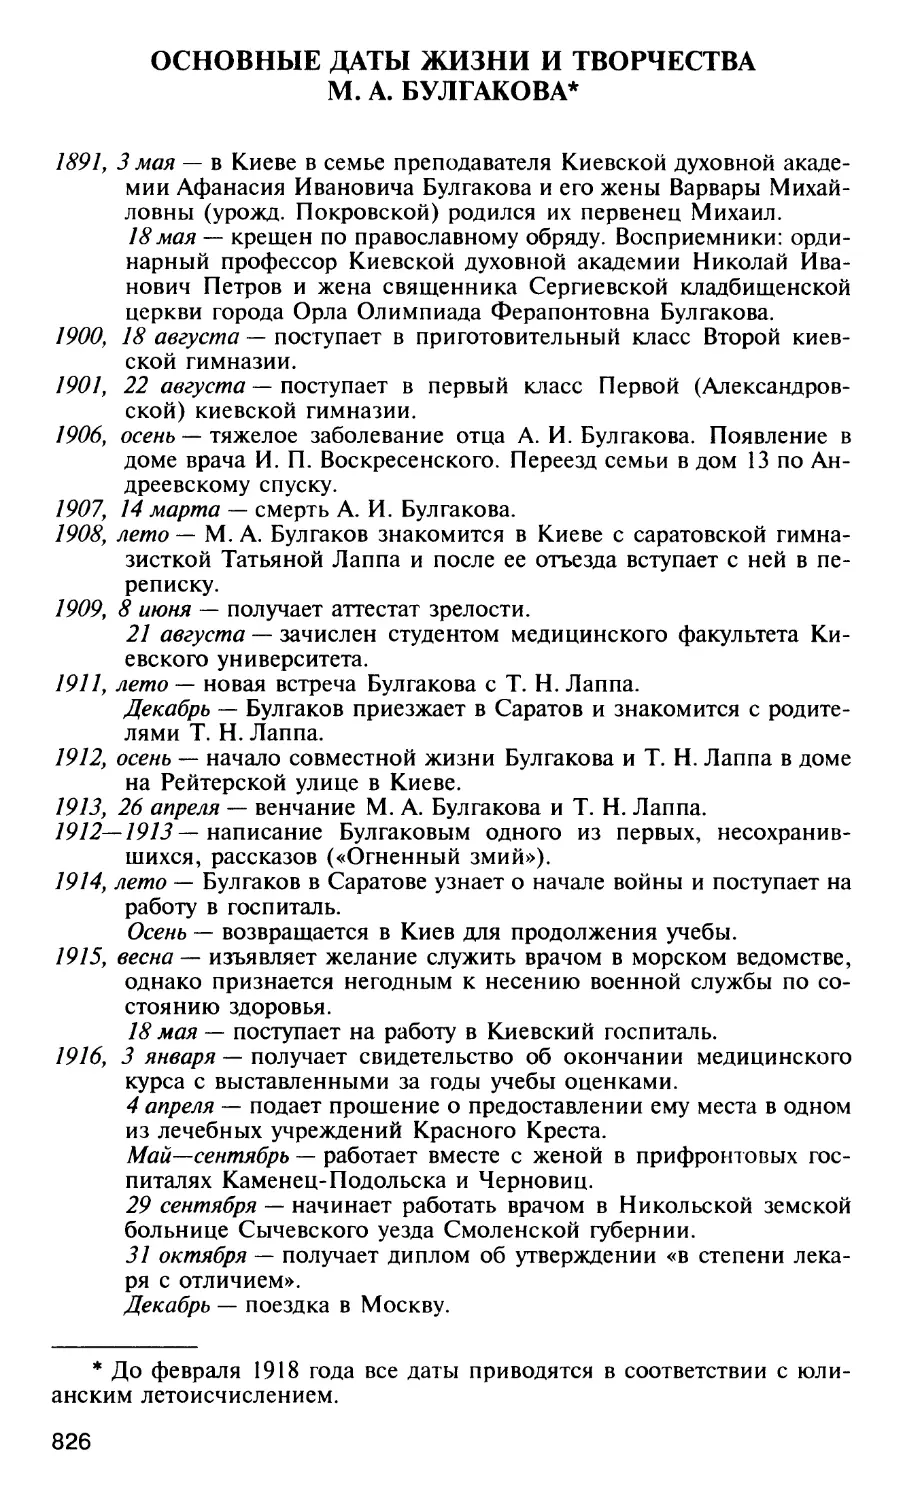 Основные даты жизни и творчества М. А. Булгакова